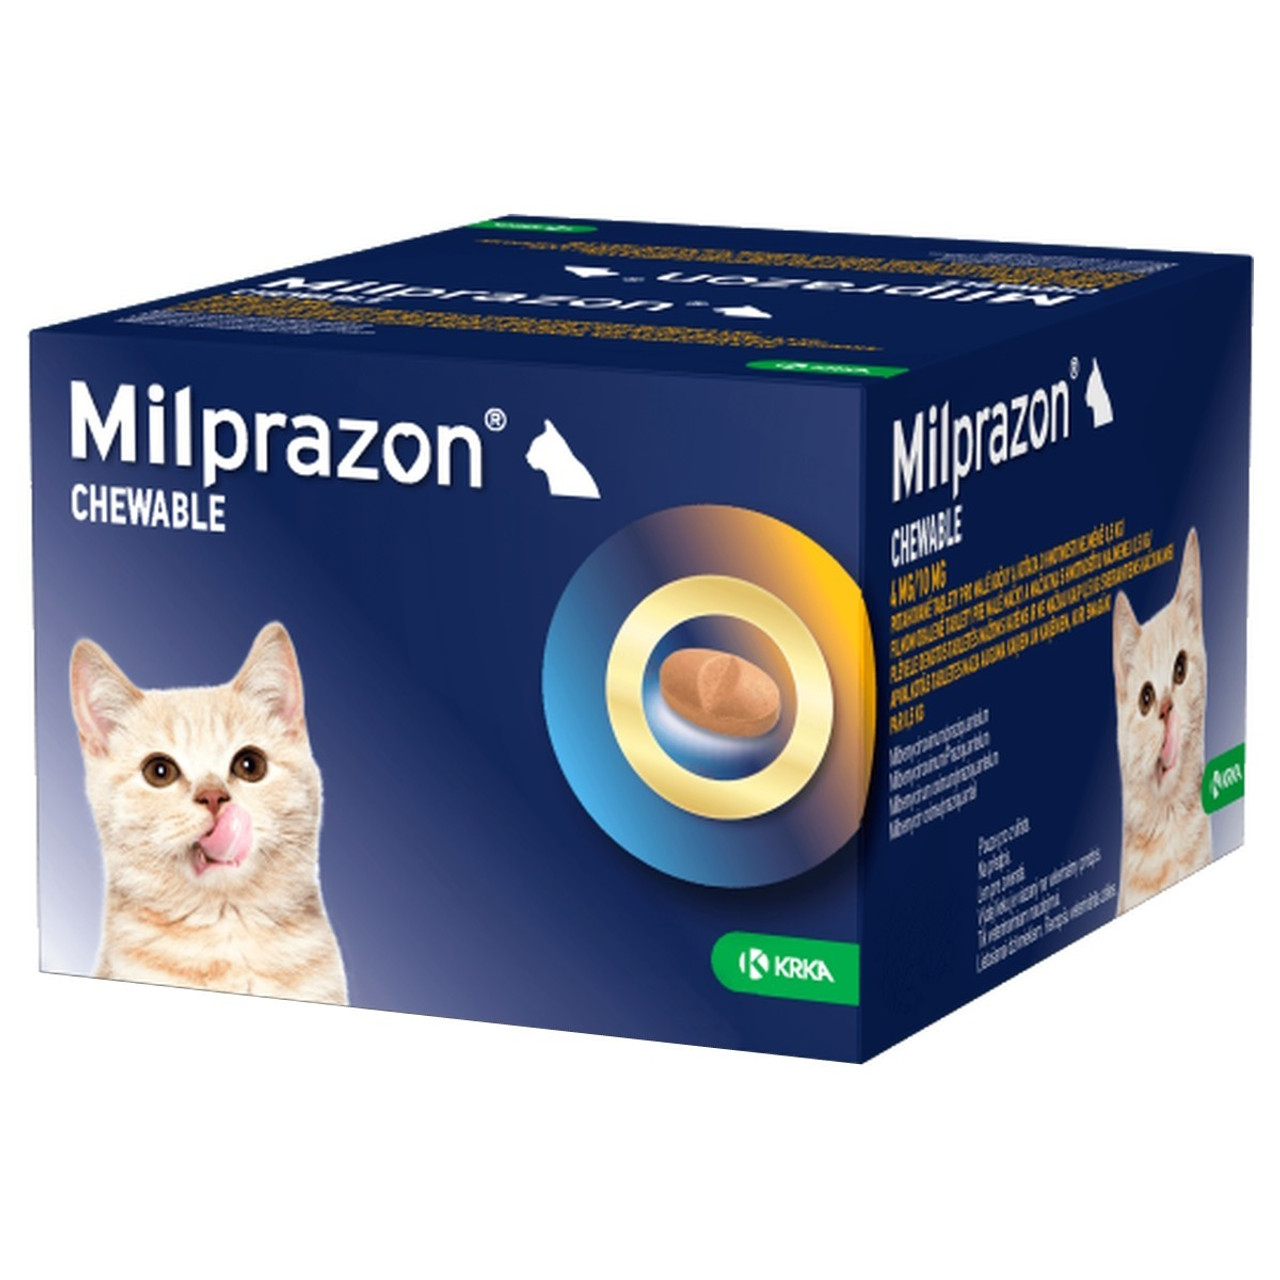 작은 고양이와 새끼 고양이를 위한 밀프라존 츄어블 4/10mg 1kg-2kg(2.2-4.4파운드)-48정 20% 할인, Atlantic Pet Products